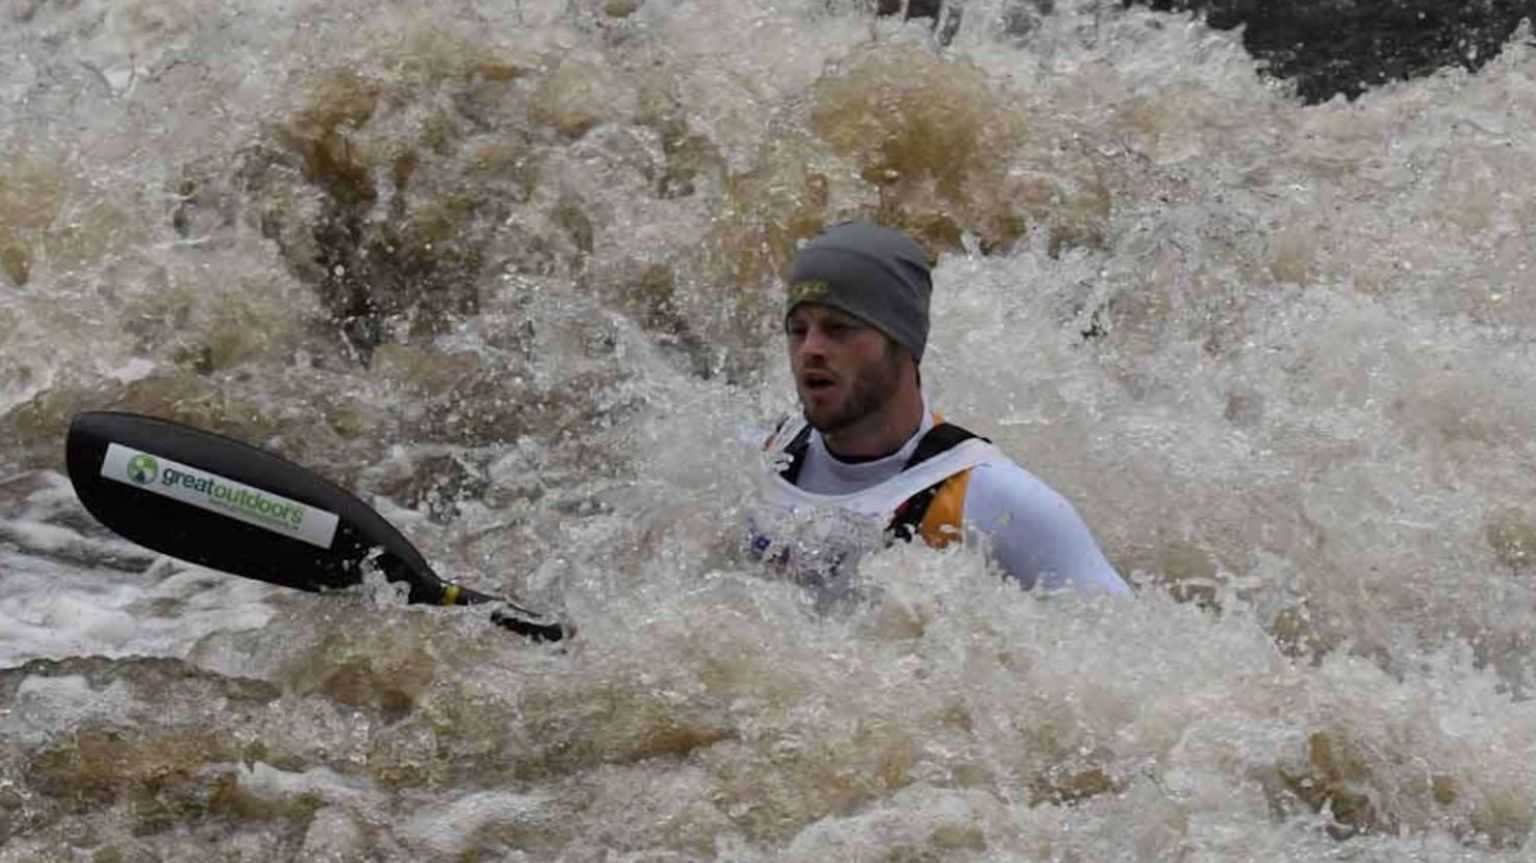 Mike Lambert kayaking in rough waters